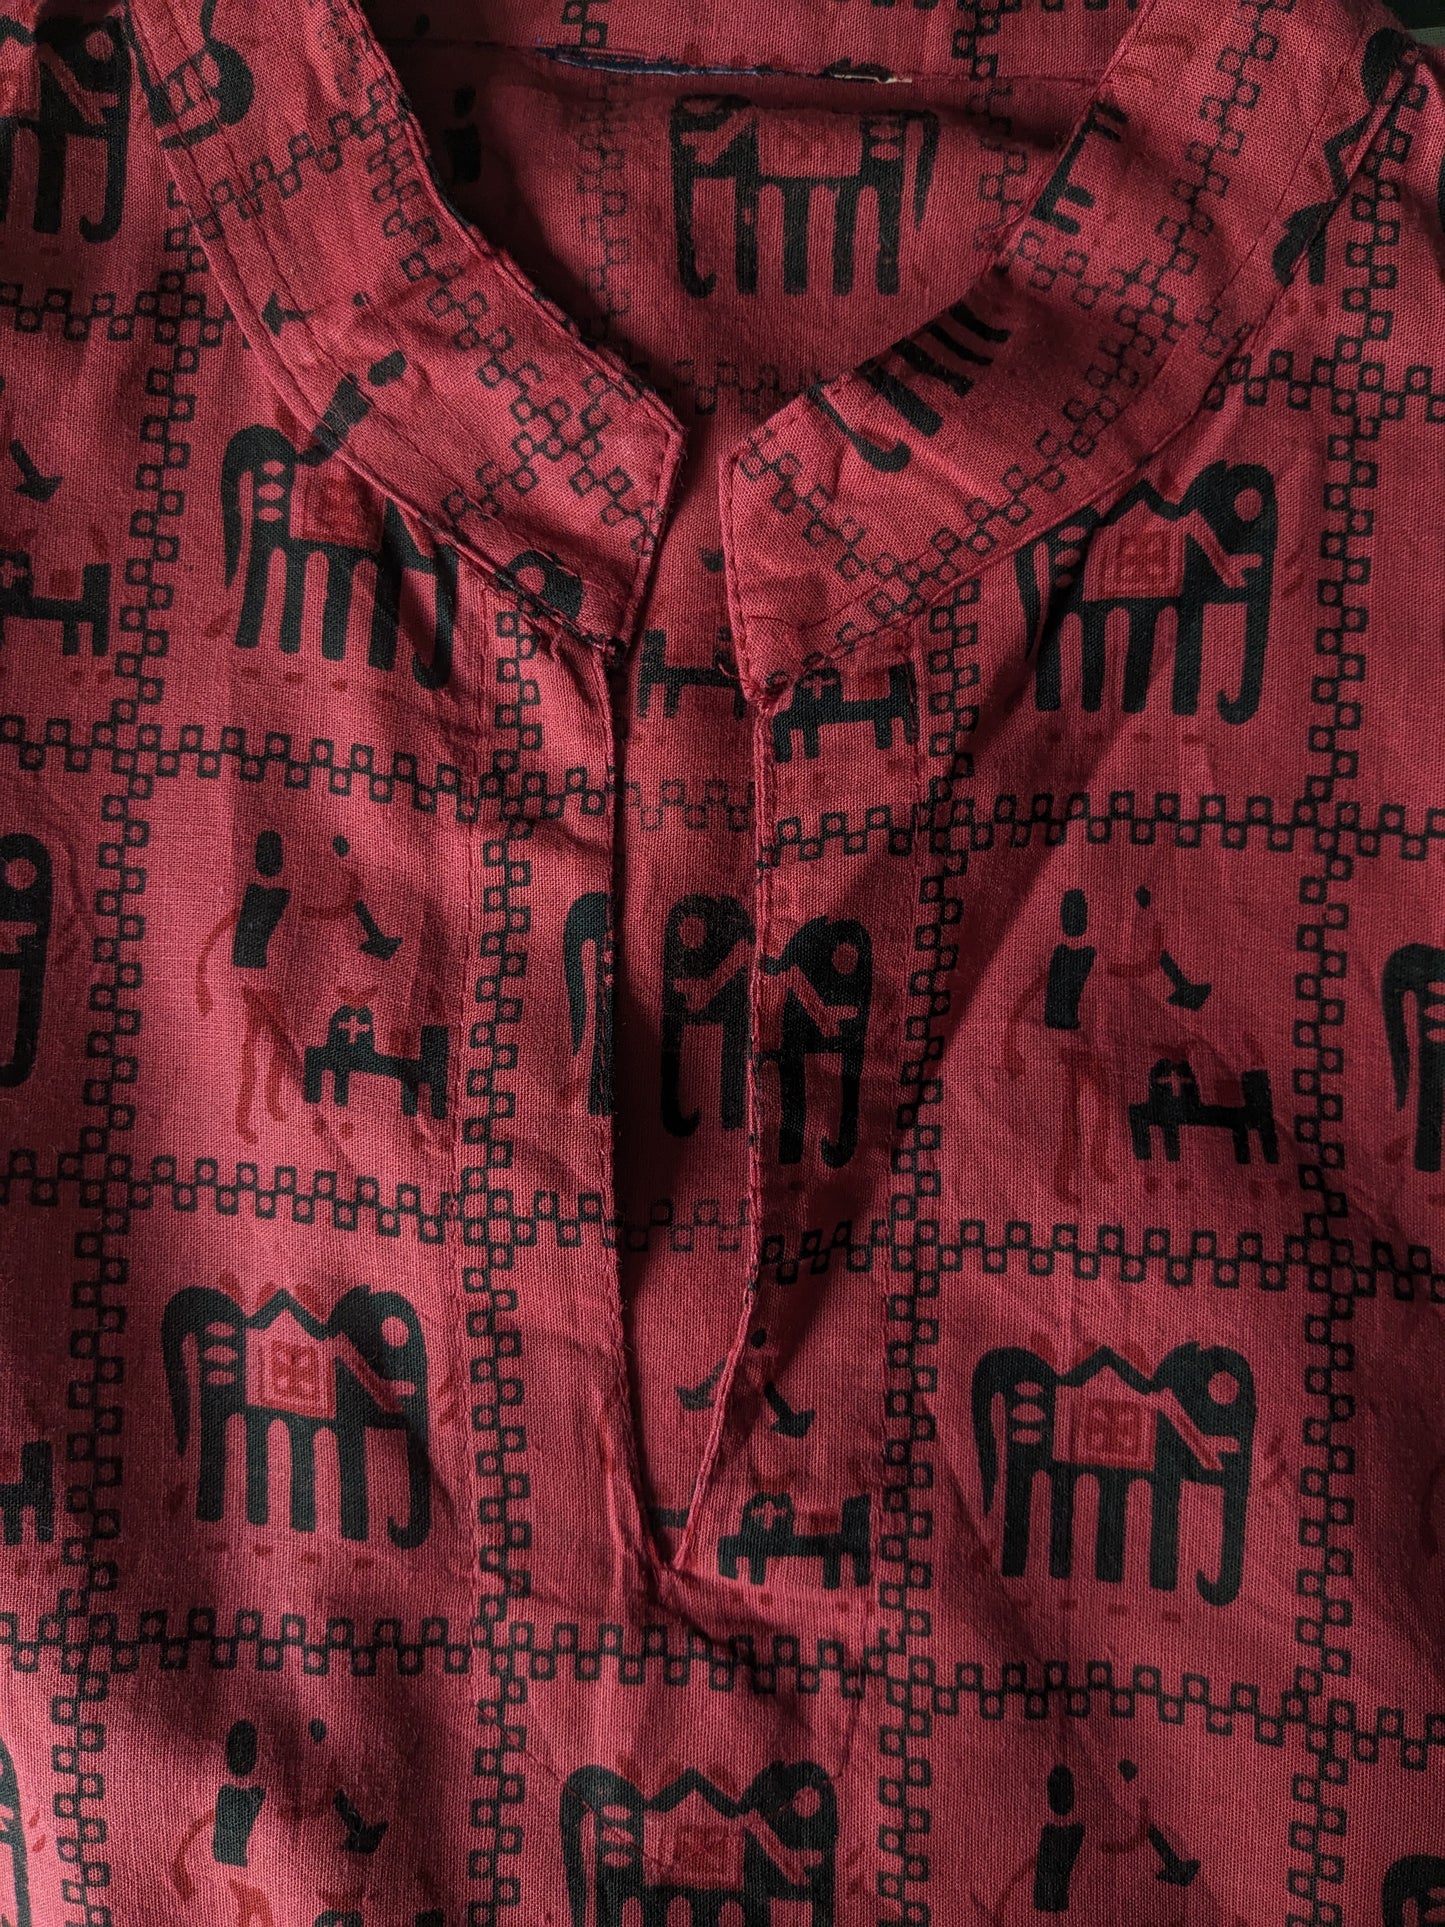 Camicia vintage con scollo a V e MAO / agricoltore / collare in piedi. Stampa nera rossa. Taglia XL.